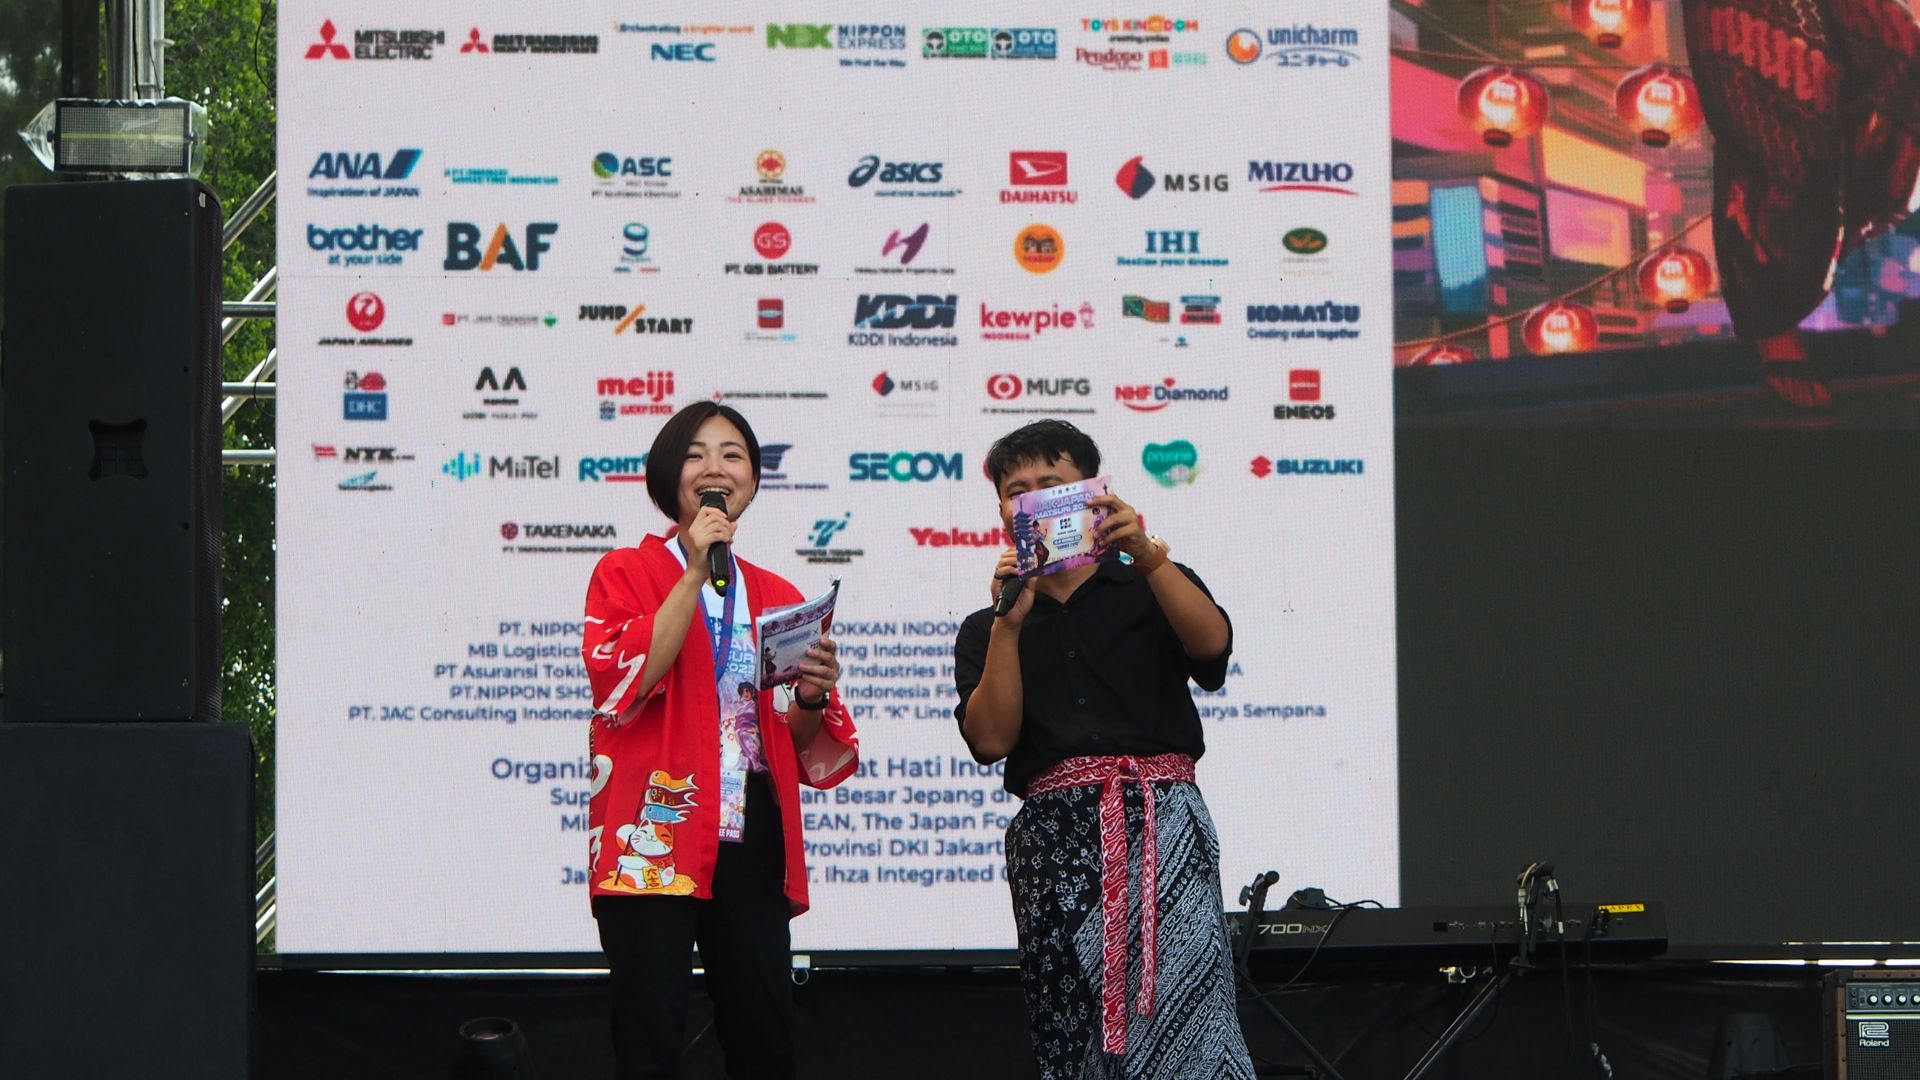 Panggung utama Jak-Japan Festival menampilkan logo MiiTel sebagai salah satu sponsor